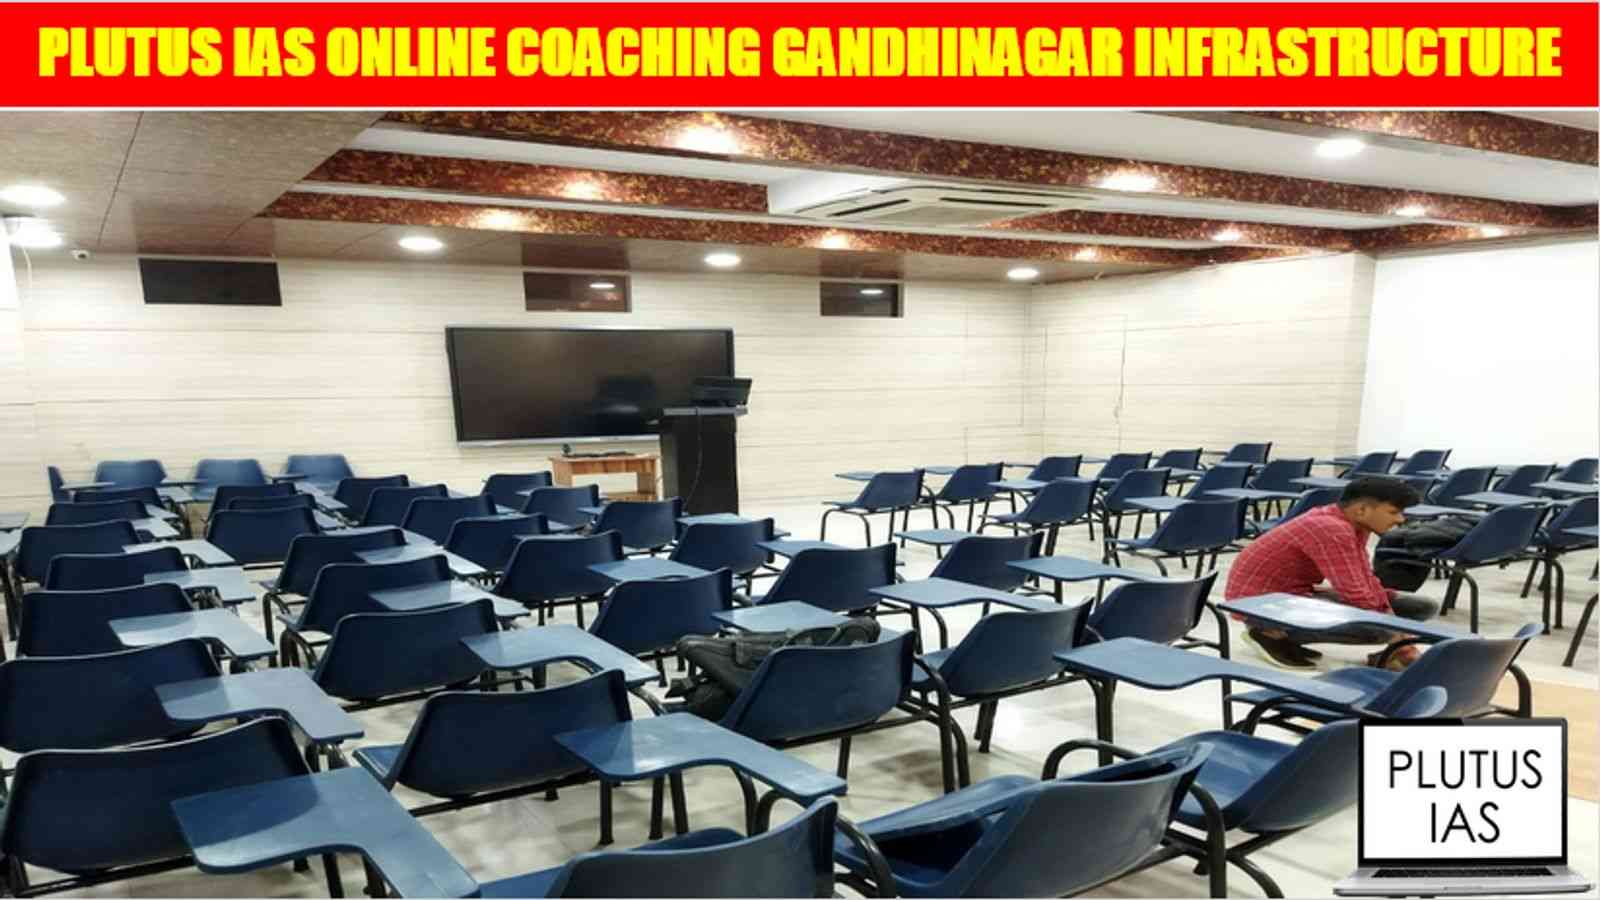 Plutus IAS Online Coaching Gandhinagar Infrastructure